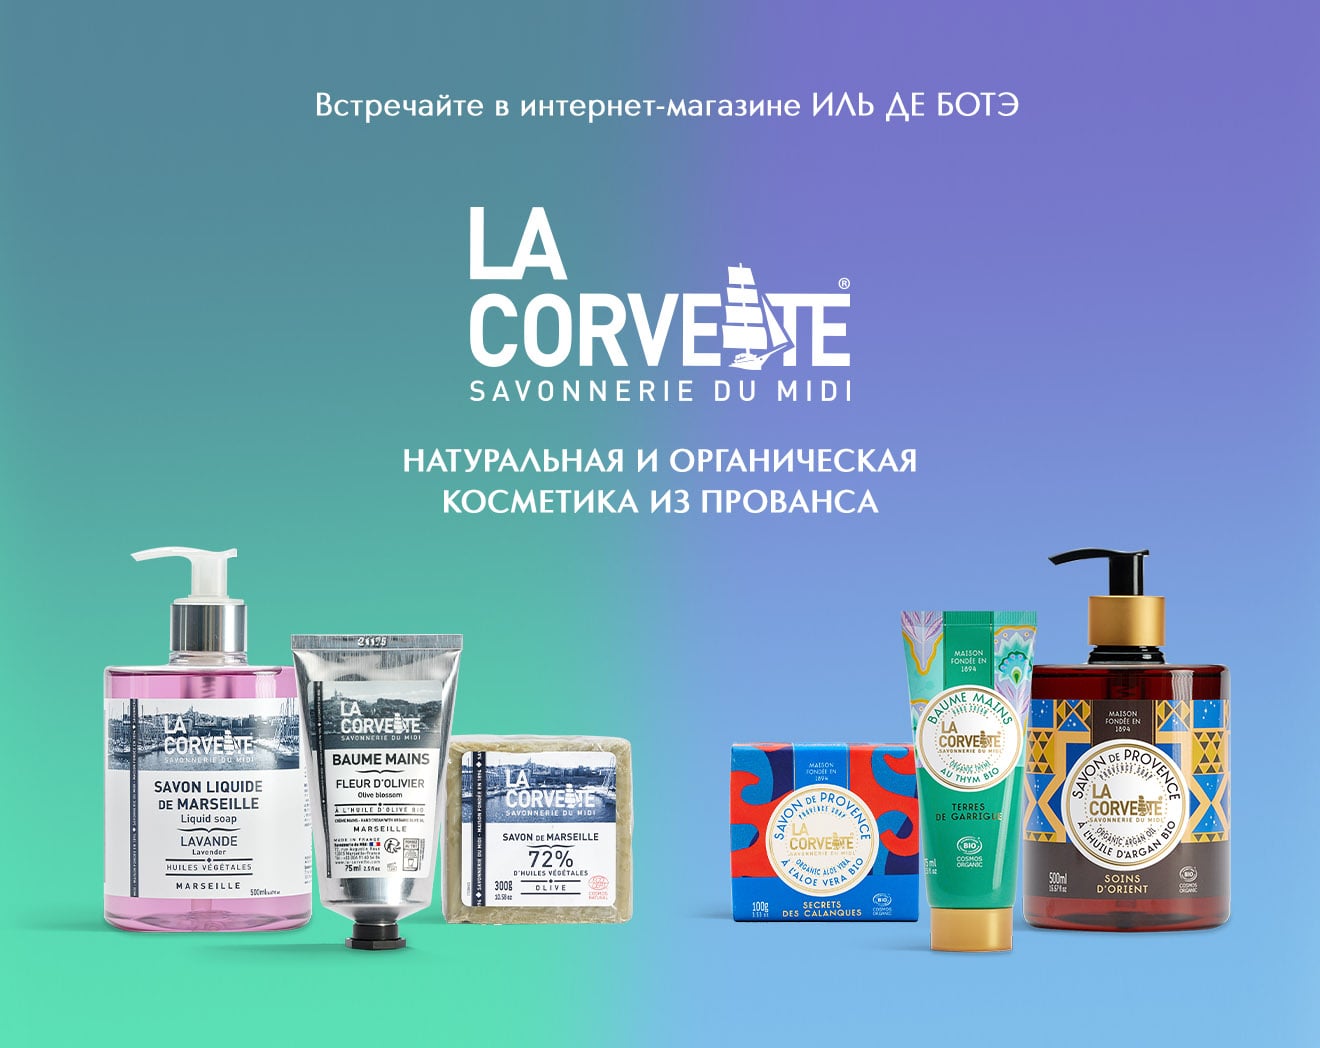 Встречайте новый бренд LA CORVETTE в ИЛЬ ДЕ БОТЭ!